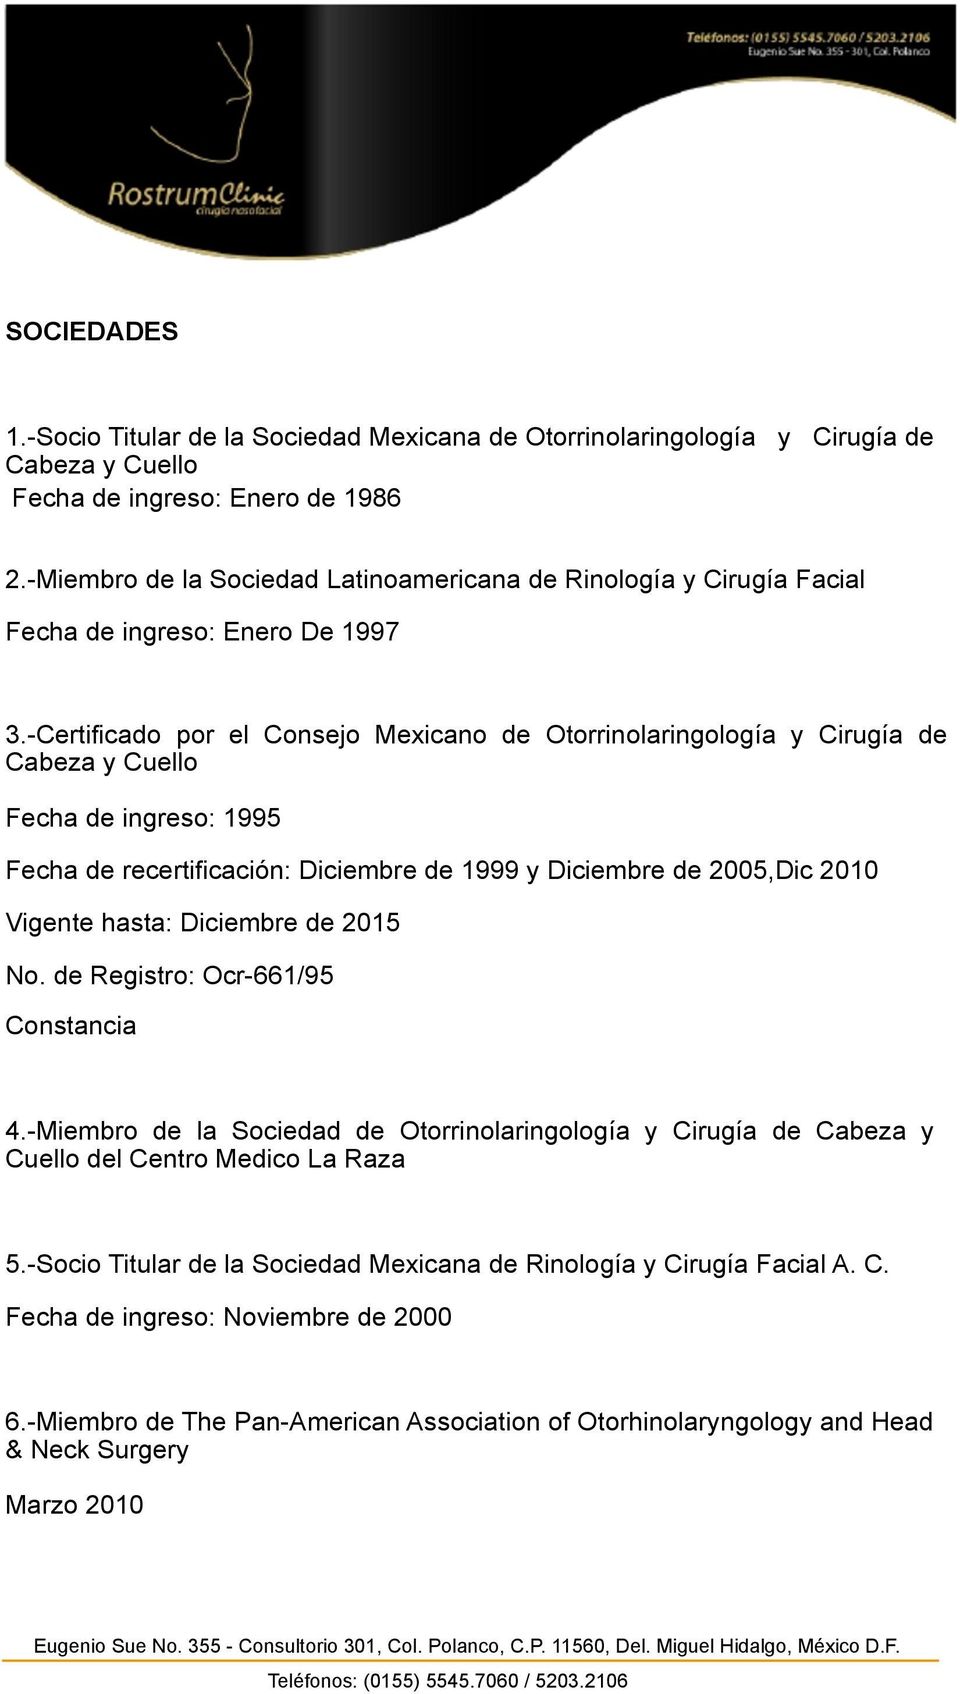 -Certificado por el Consejo Mexicano de Otorrinolaringología y Cirugía de Cabeza y Cuello Fecha de ingreso: 1995 Fecha de recertificación: Diciembre de 1999 y Diciembre de 2005,Dic 2010 Vigente